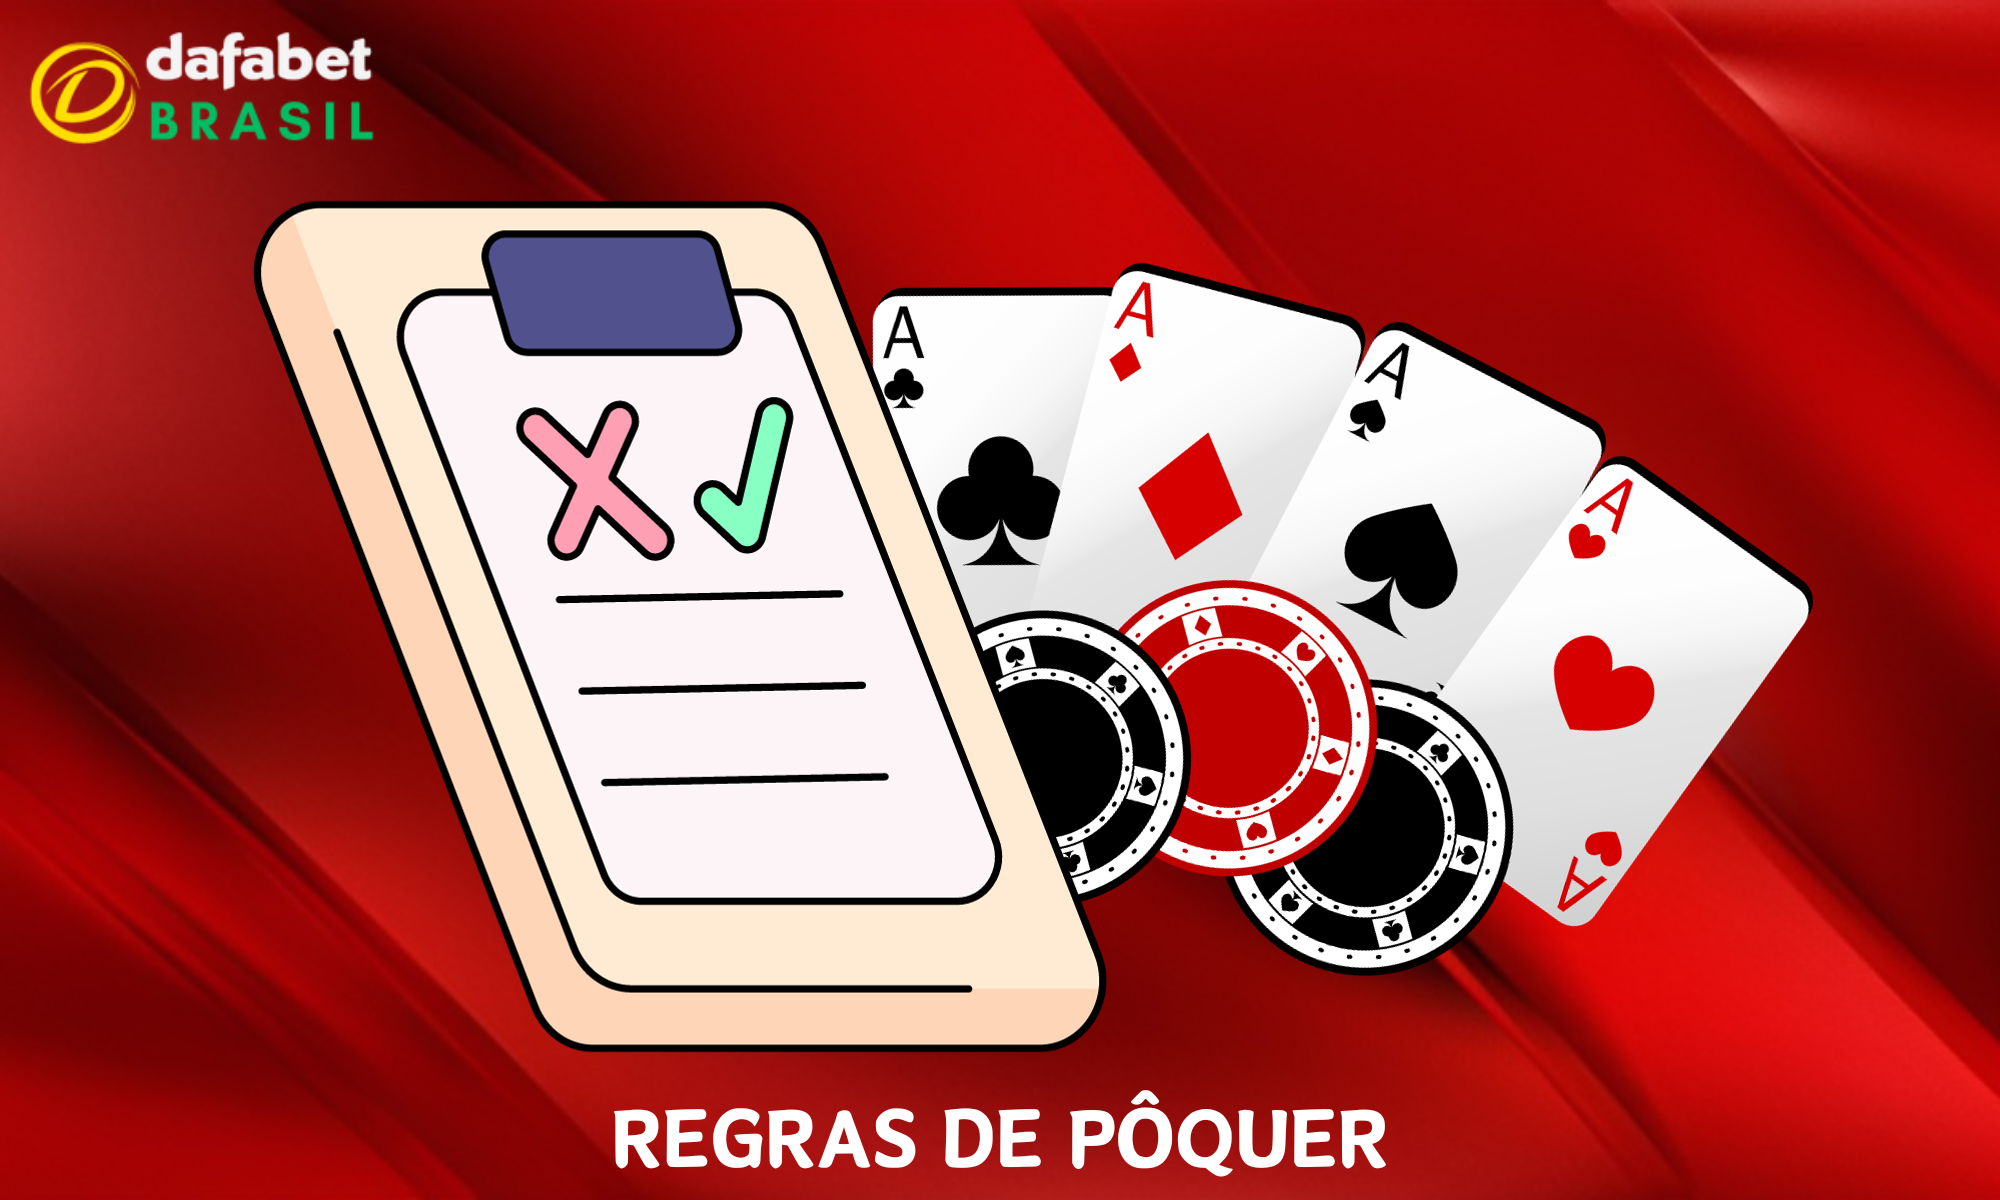 Regras básicas de pôquer na Dafabet